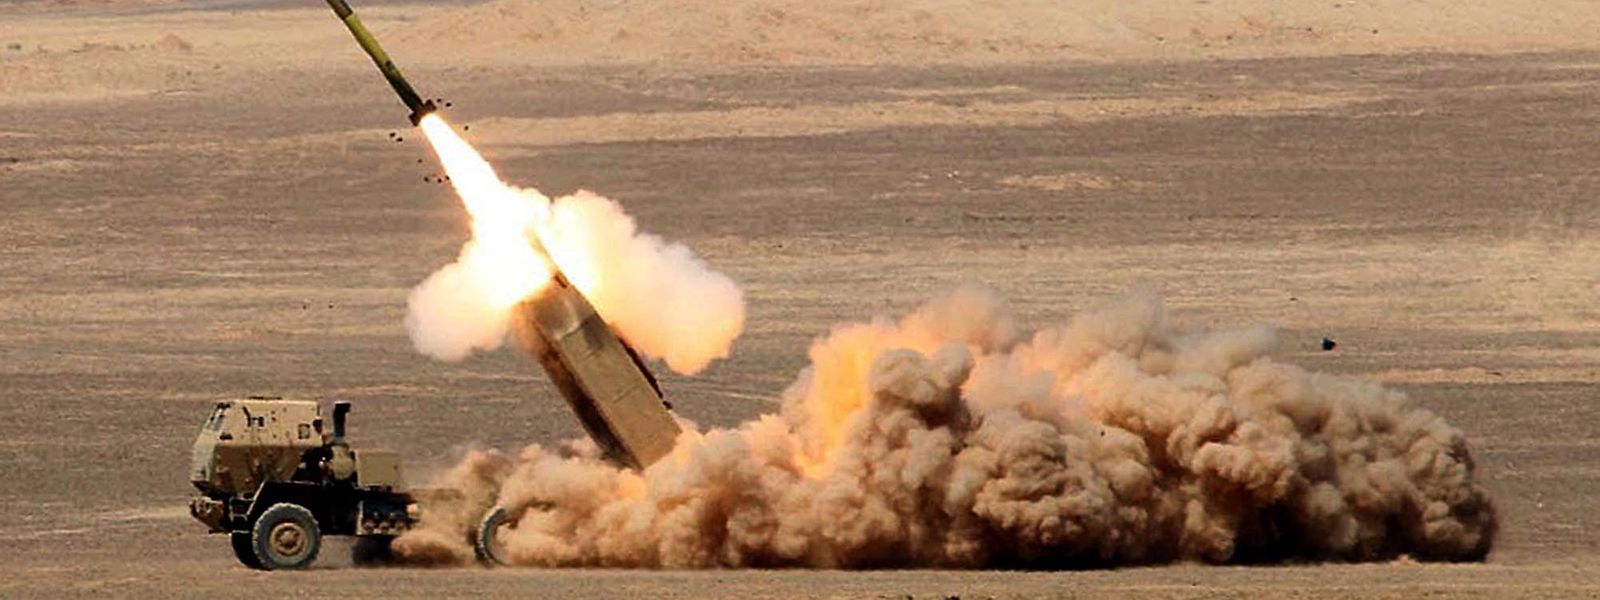 Ein US-Raketenwerfer HIMARS (High Mobility Artillery Rocket System) beim Abschuss einer Rakete während einer Militärübung.